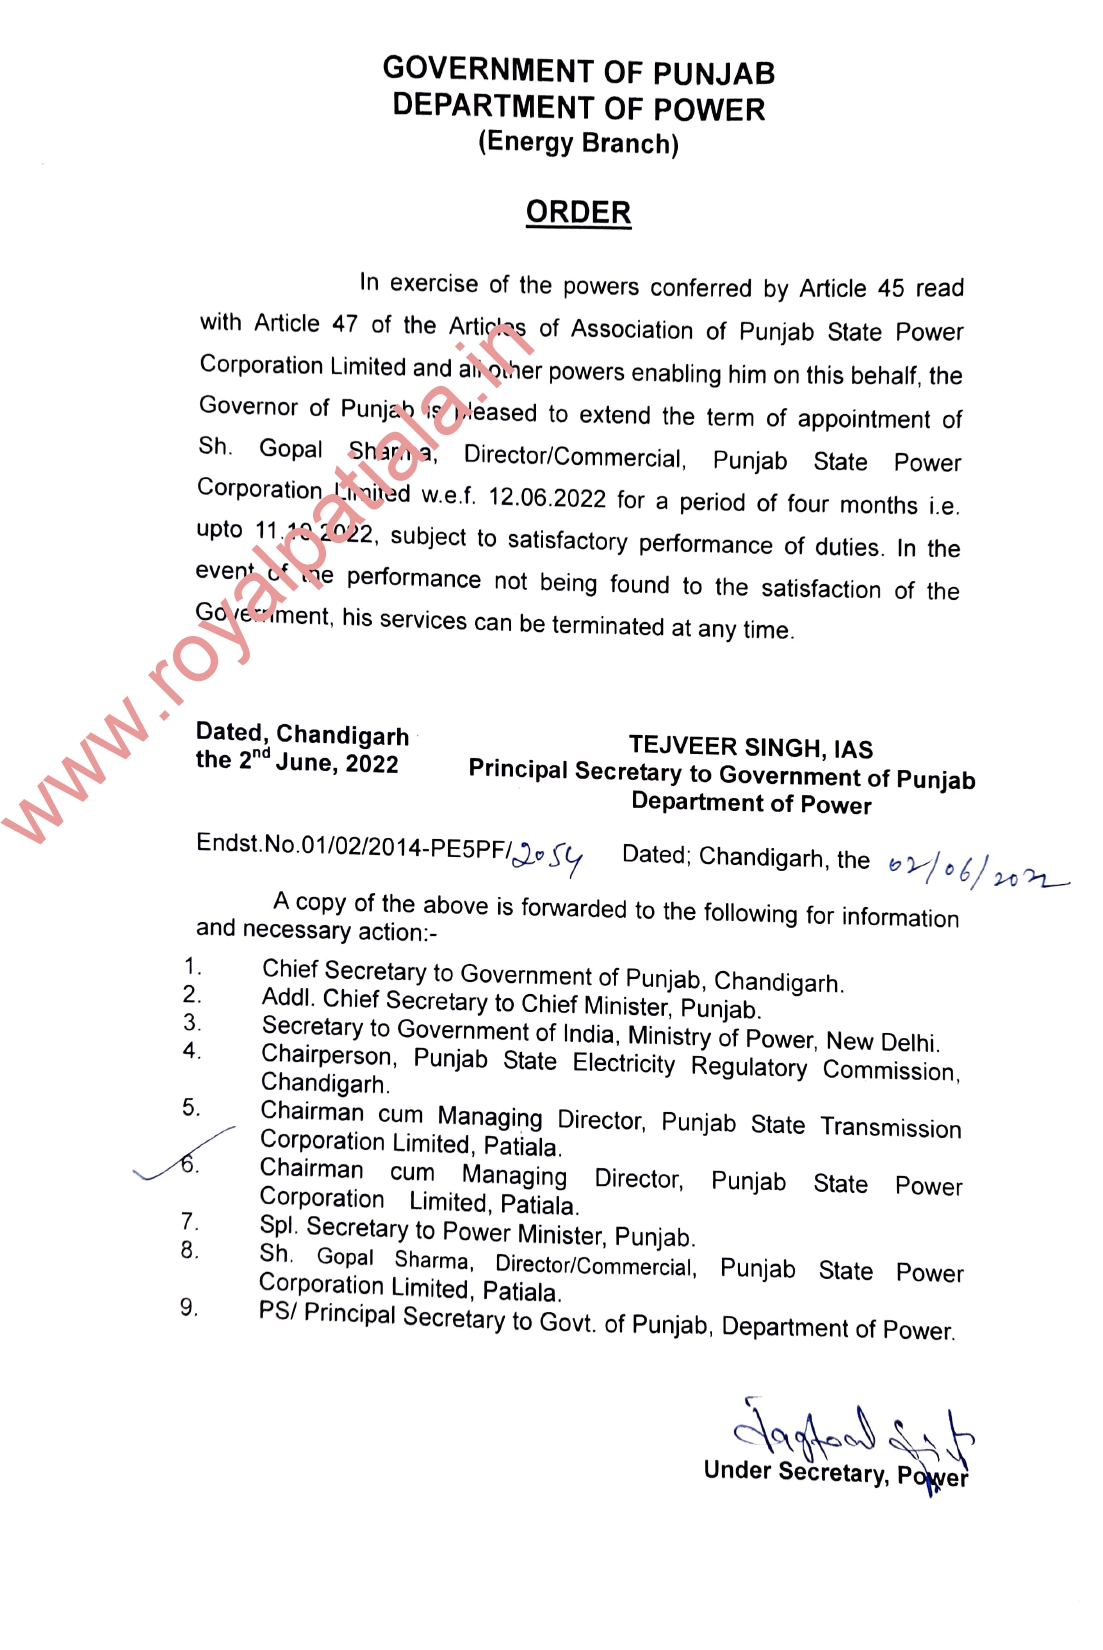 PSPCL, PSTCL directors term extended by Punjab govt